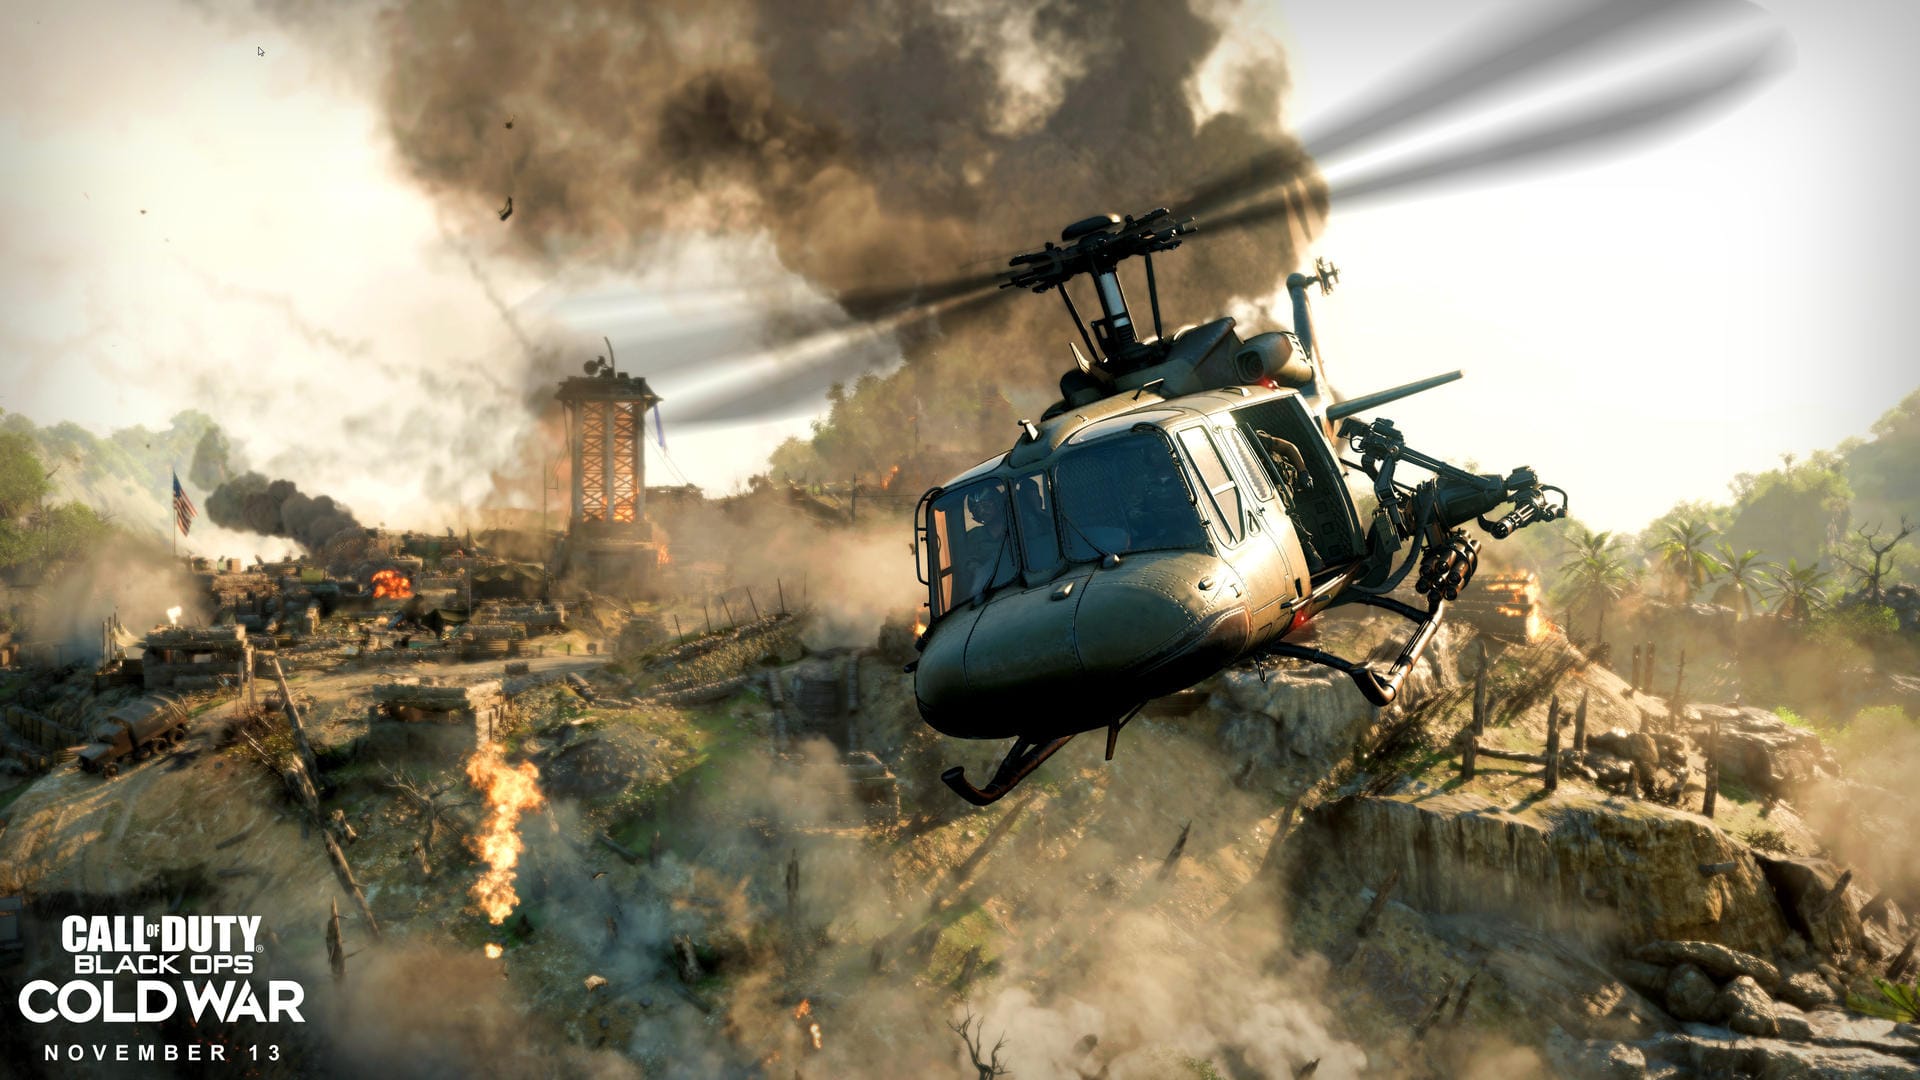 Blockbuster-Szenen wie solche gehören zu den Markenzeichen von "Call of Duty".